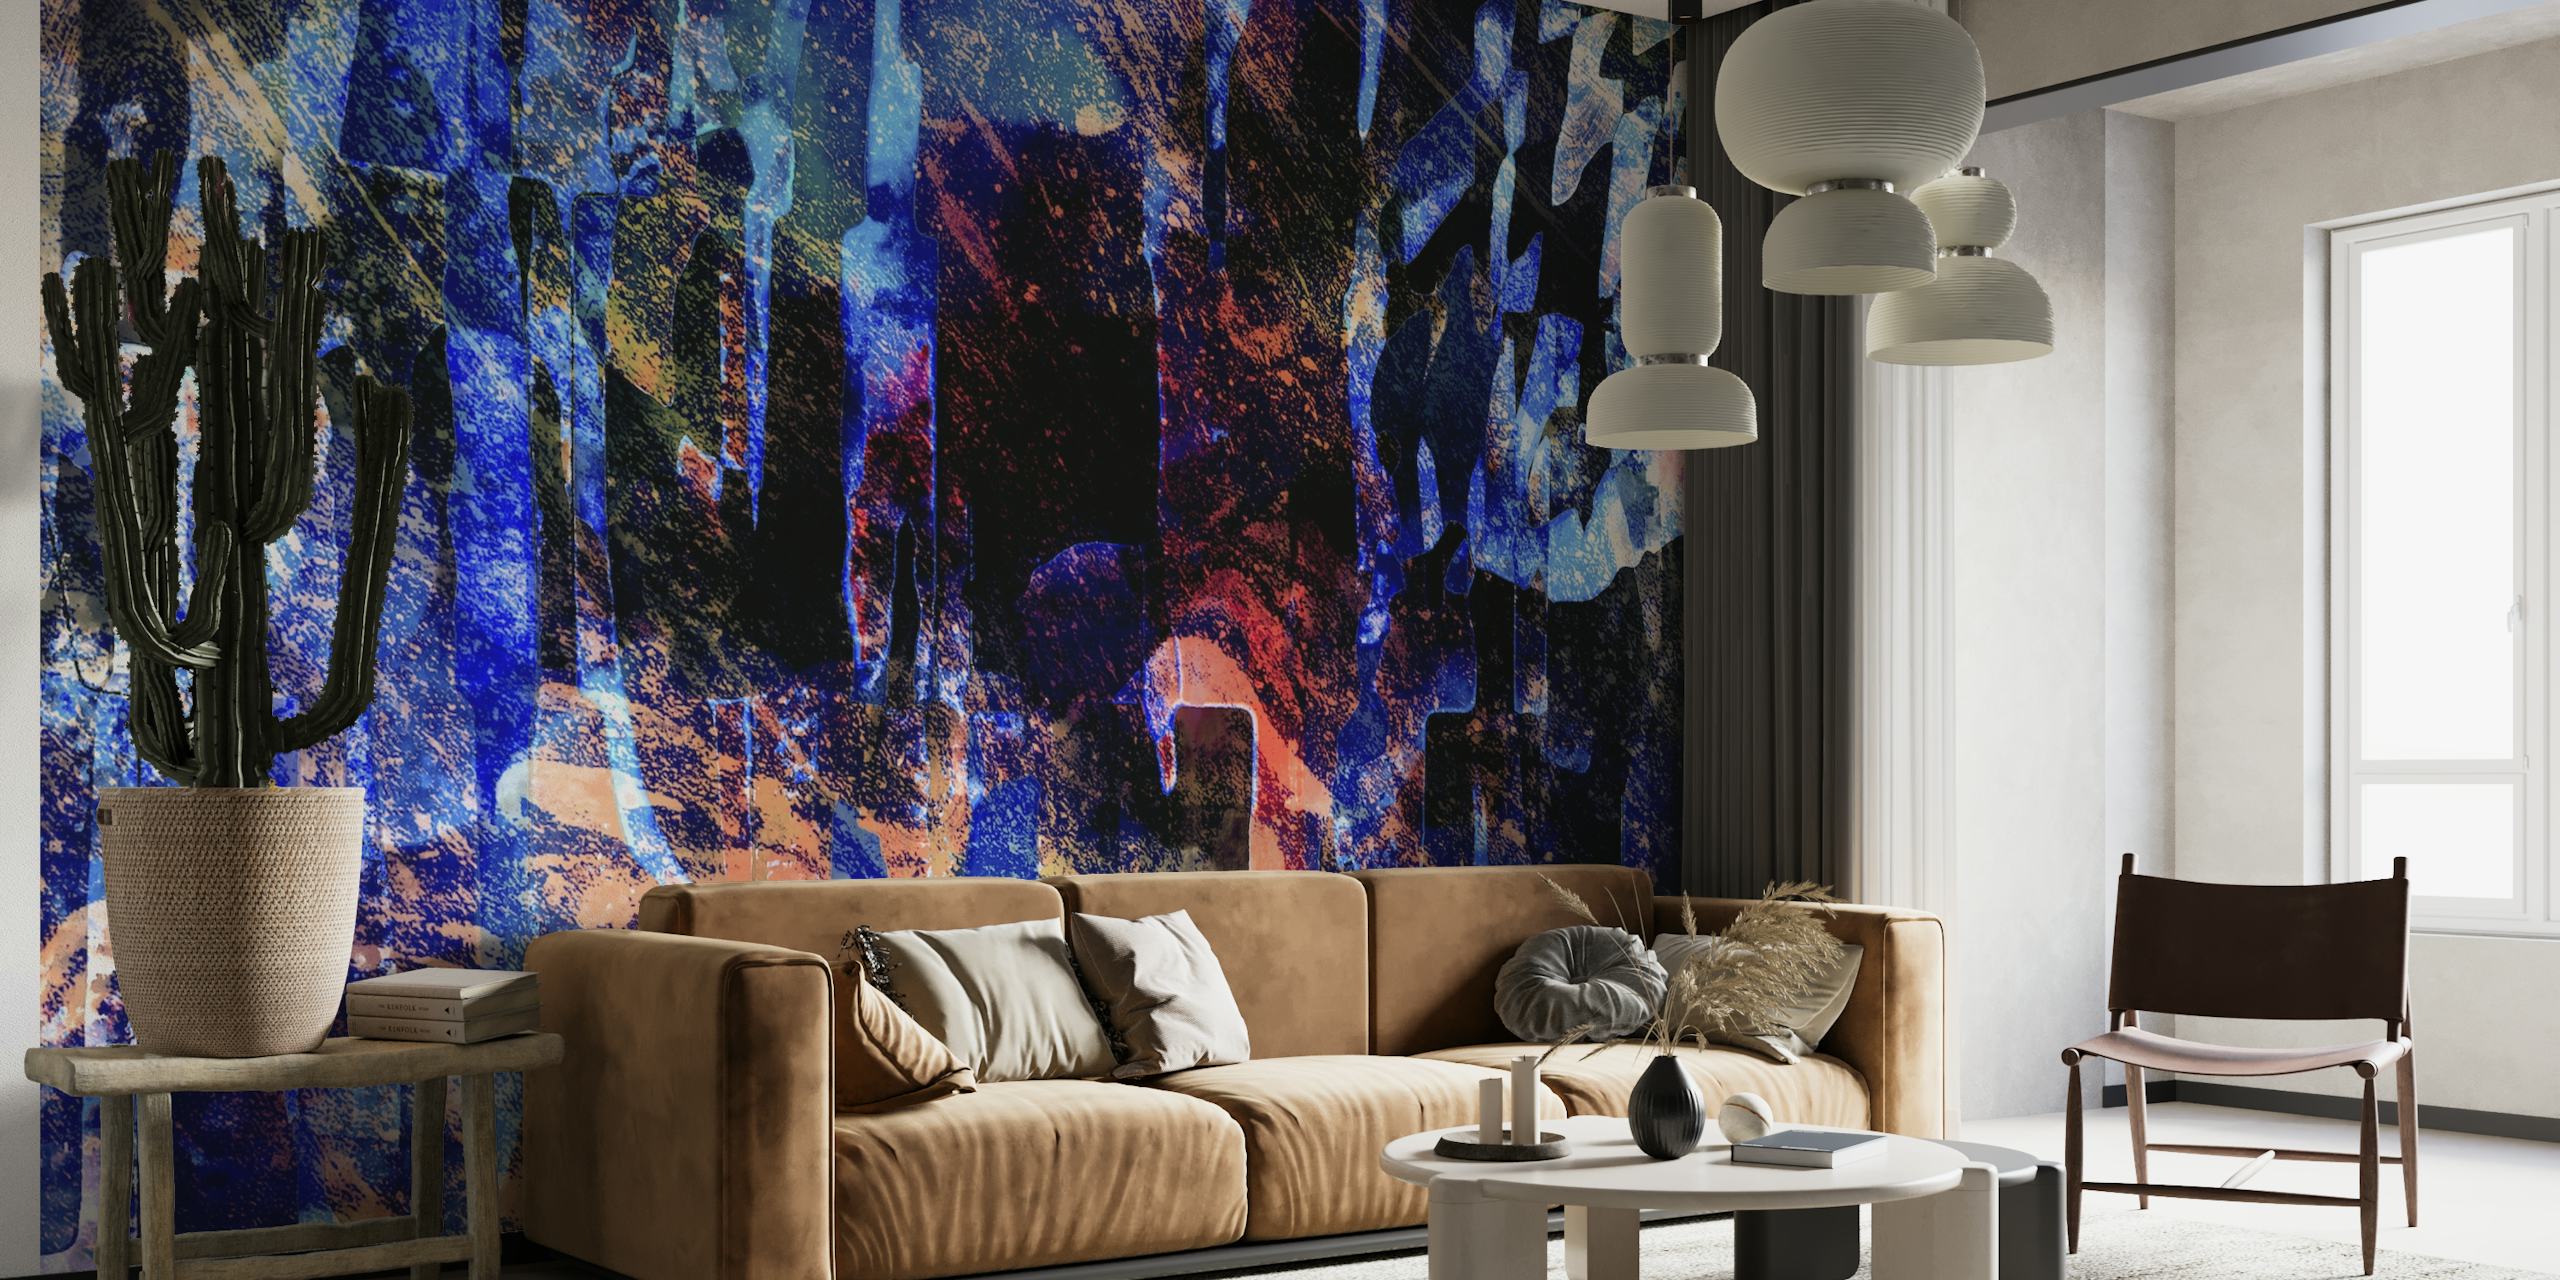 Night Dye Abstrakt tapet med en blandning av djupa blåtoner och varma färger i en modern konstnärlig design